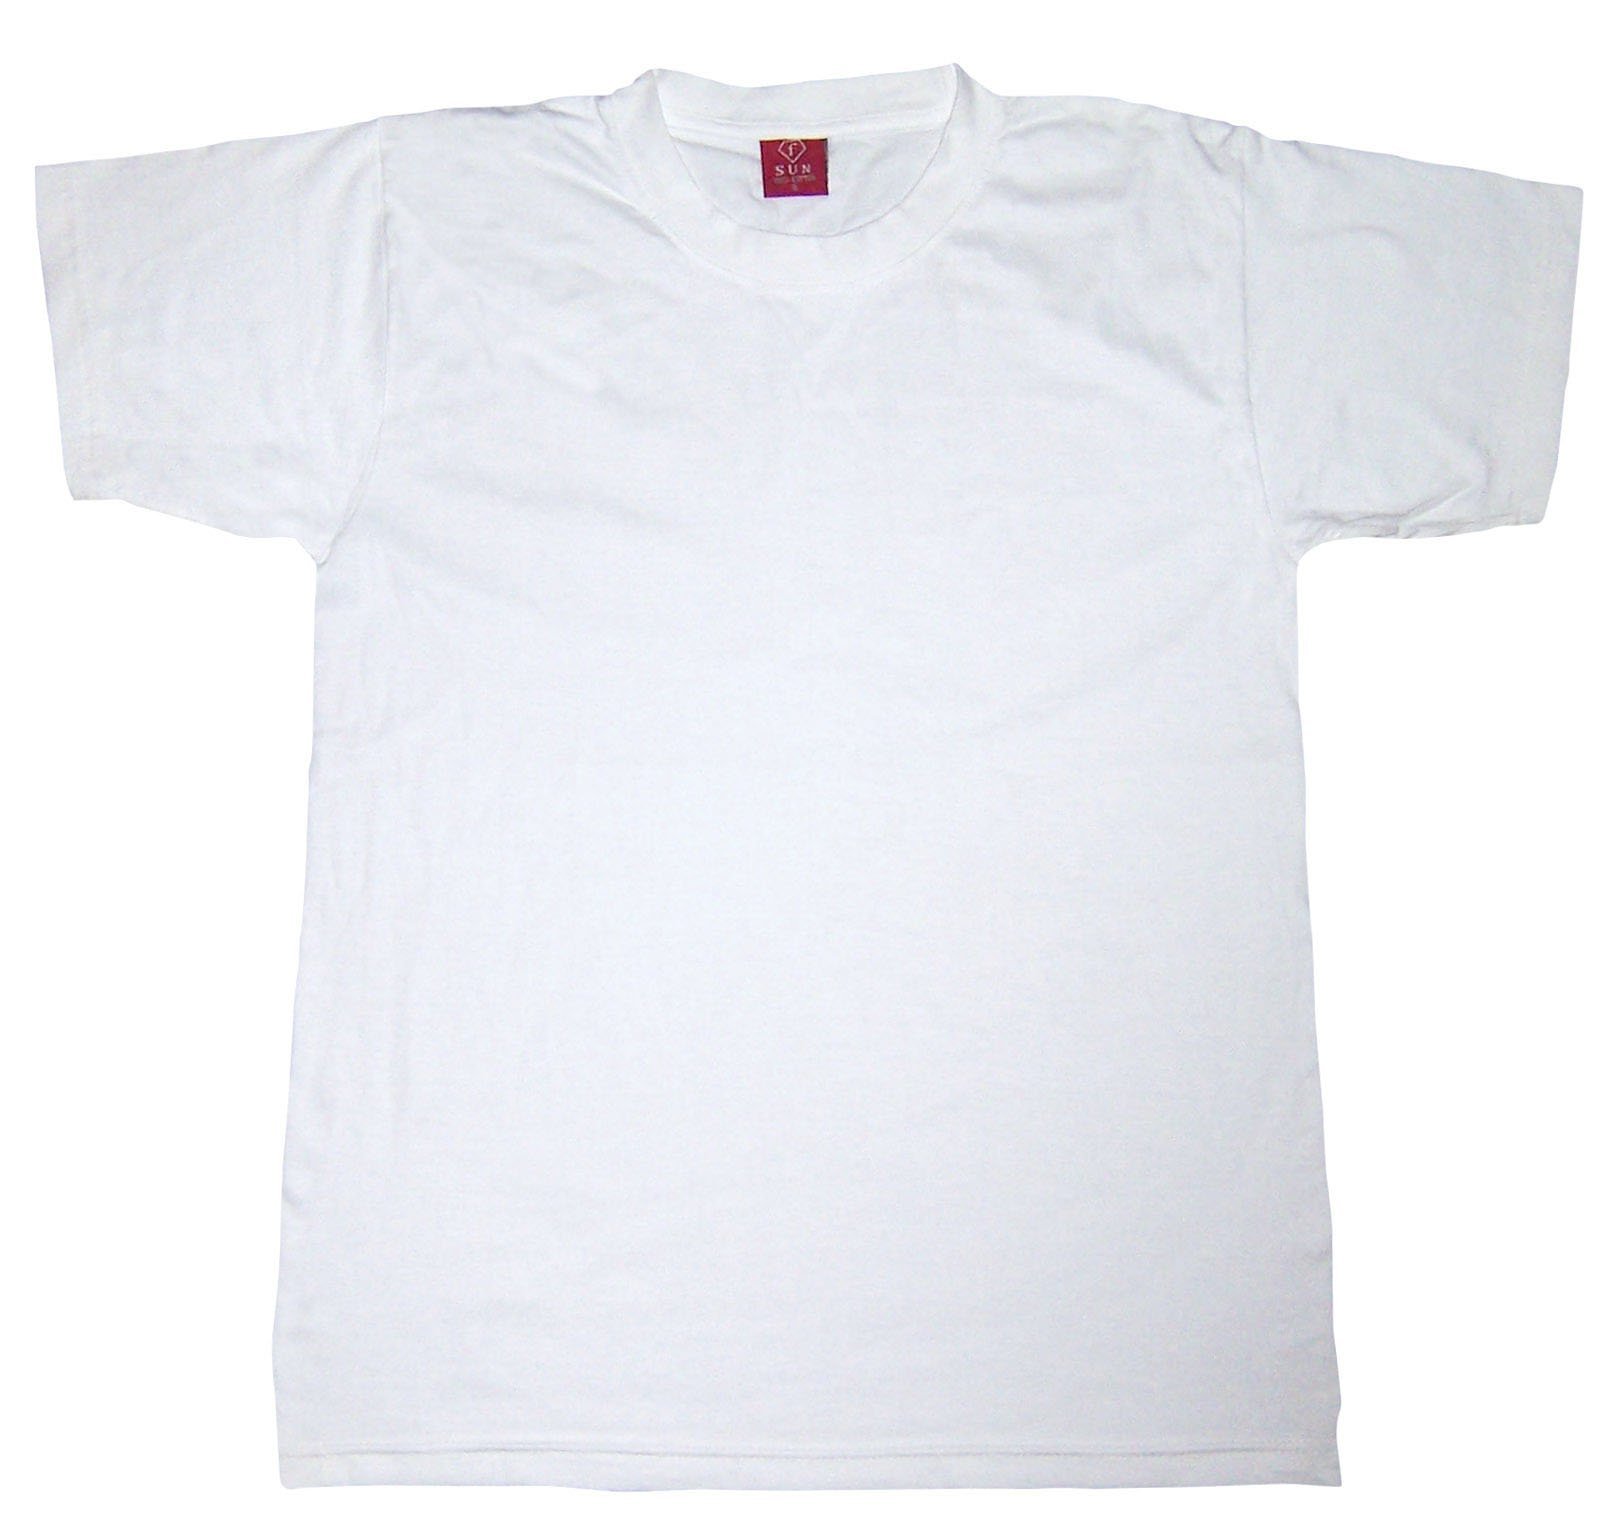 tee shirt blank